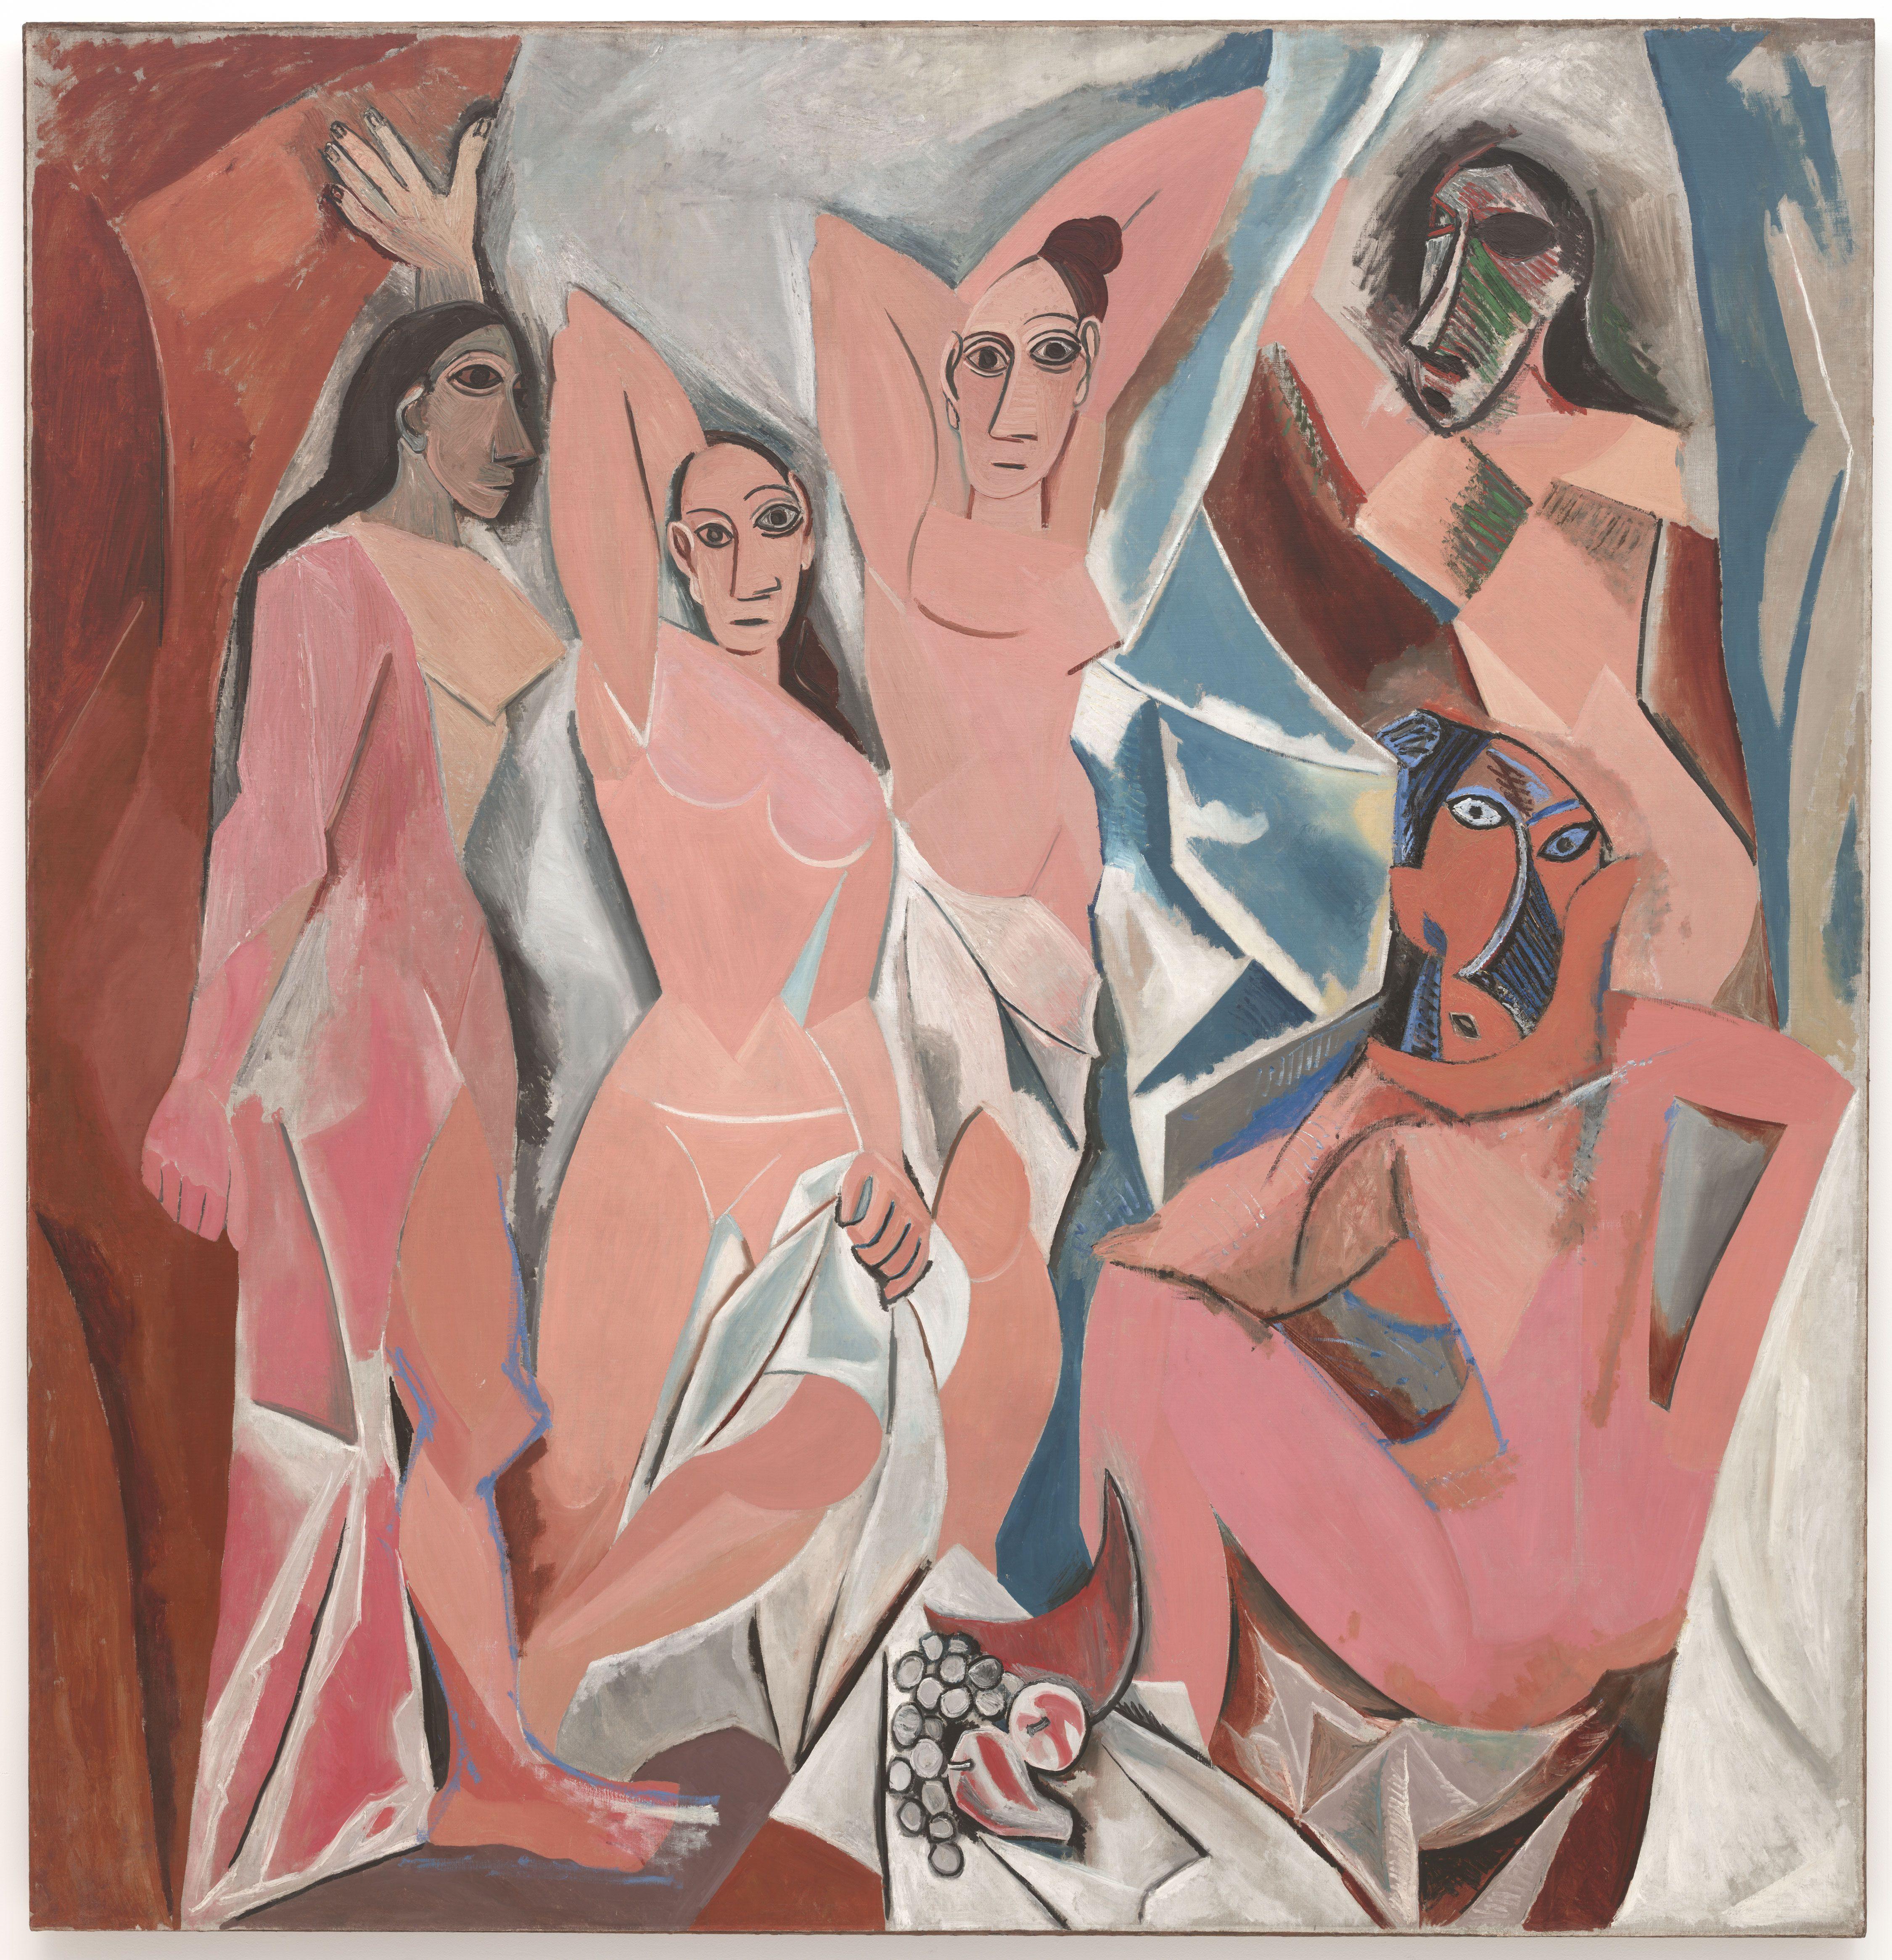 Les Demoiselles d'Avignon by Pablo Picasso - 1907 - 243.9 см × 233.7 см 